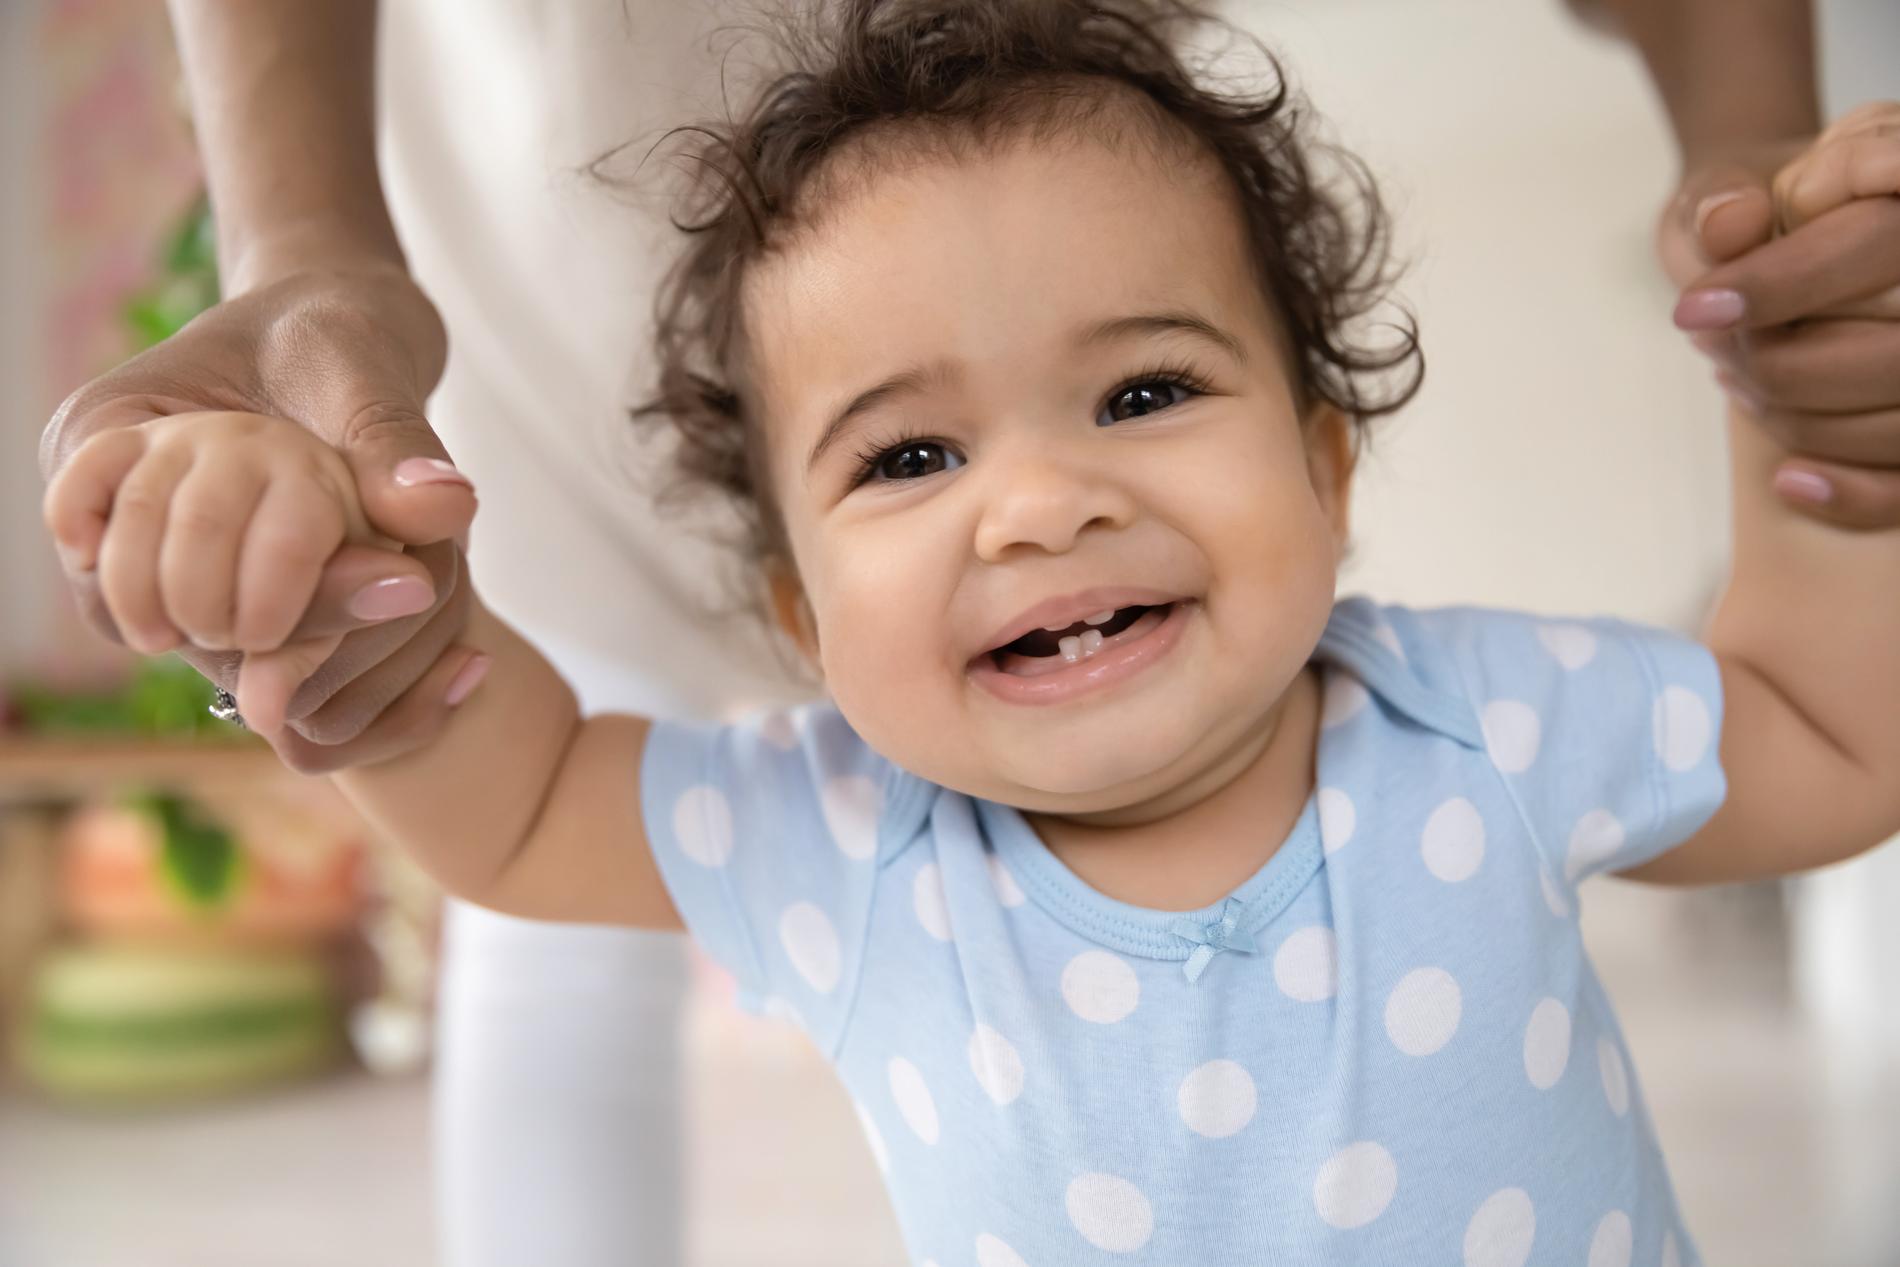 Flickan på bilden med sina första tänder. Barn får vanligen sina första tänder någon gång vid sex till åtta månaders ålder, enligt tandläkaren Lina Granqvist.